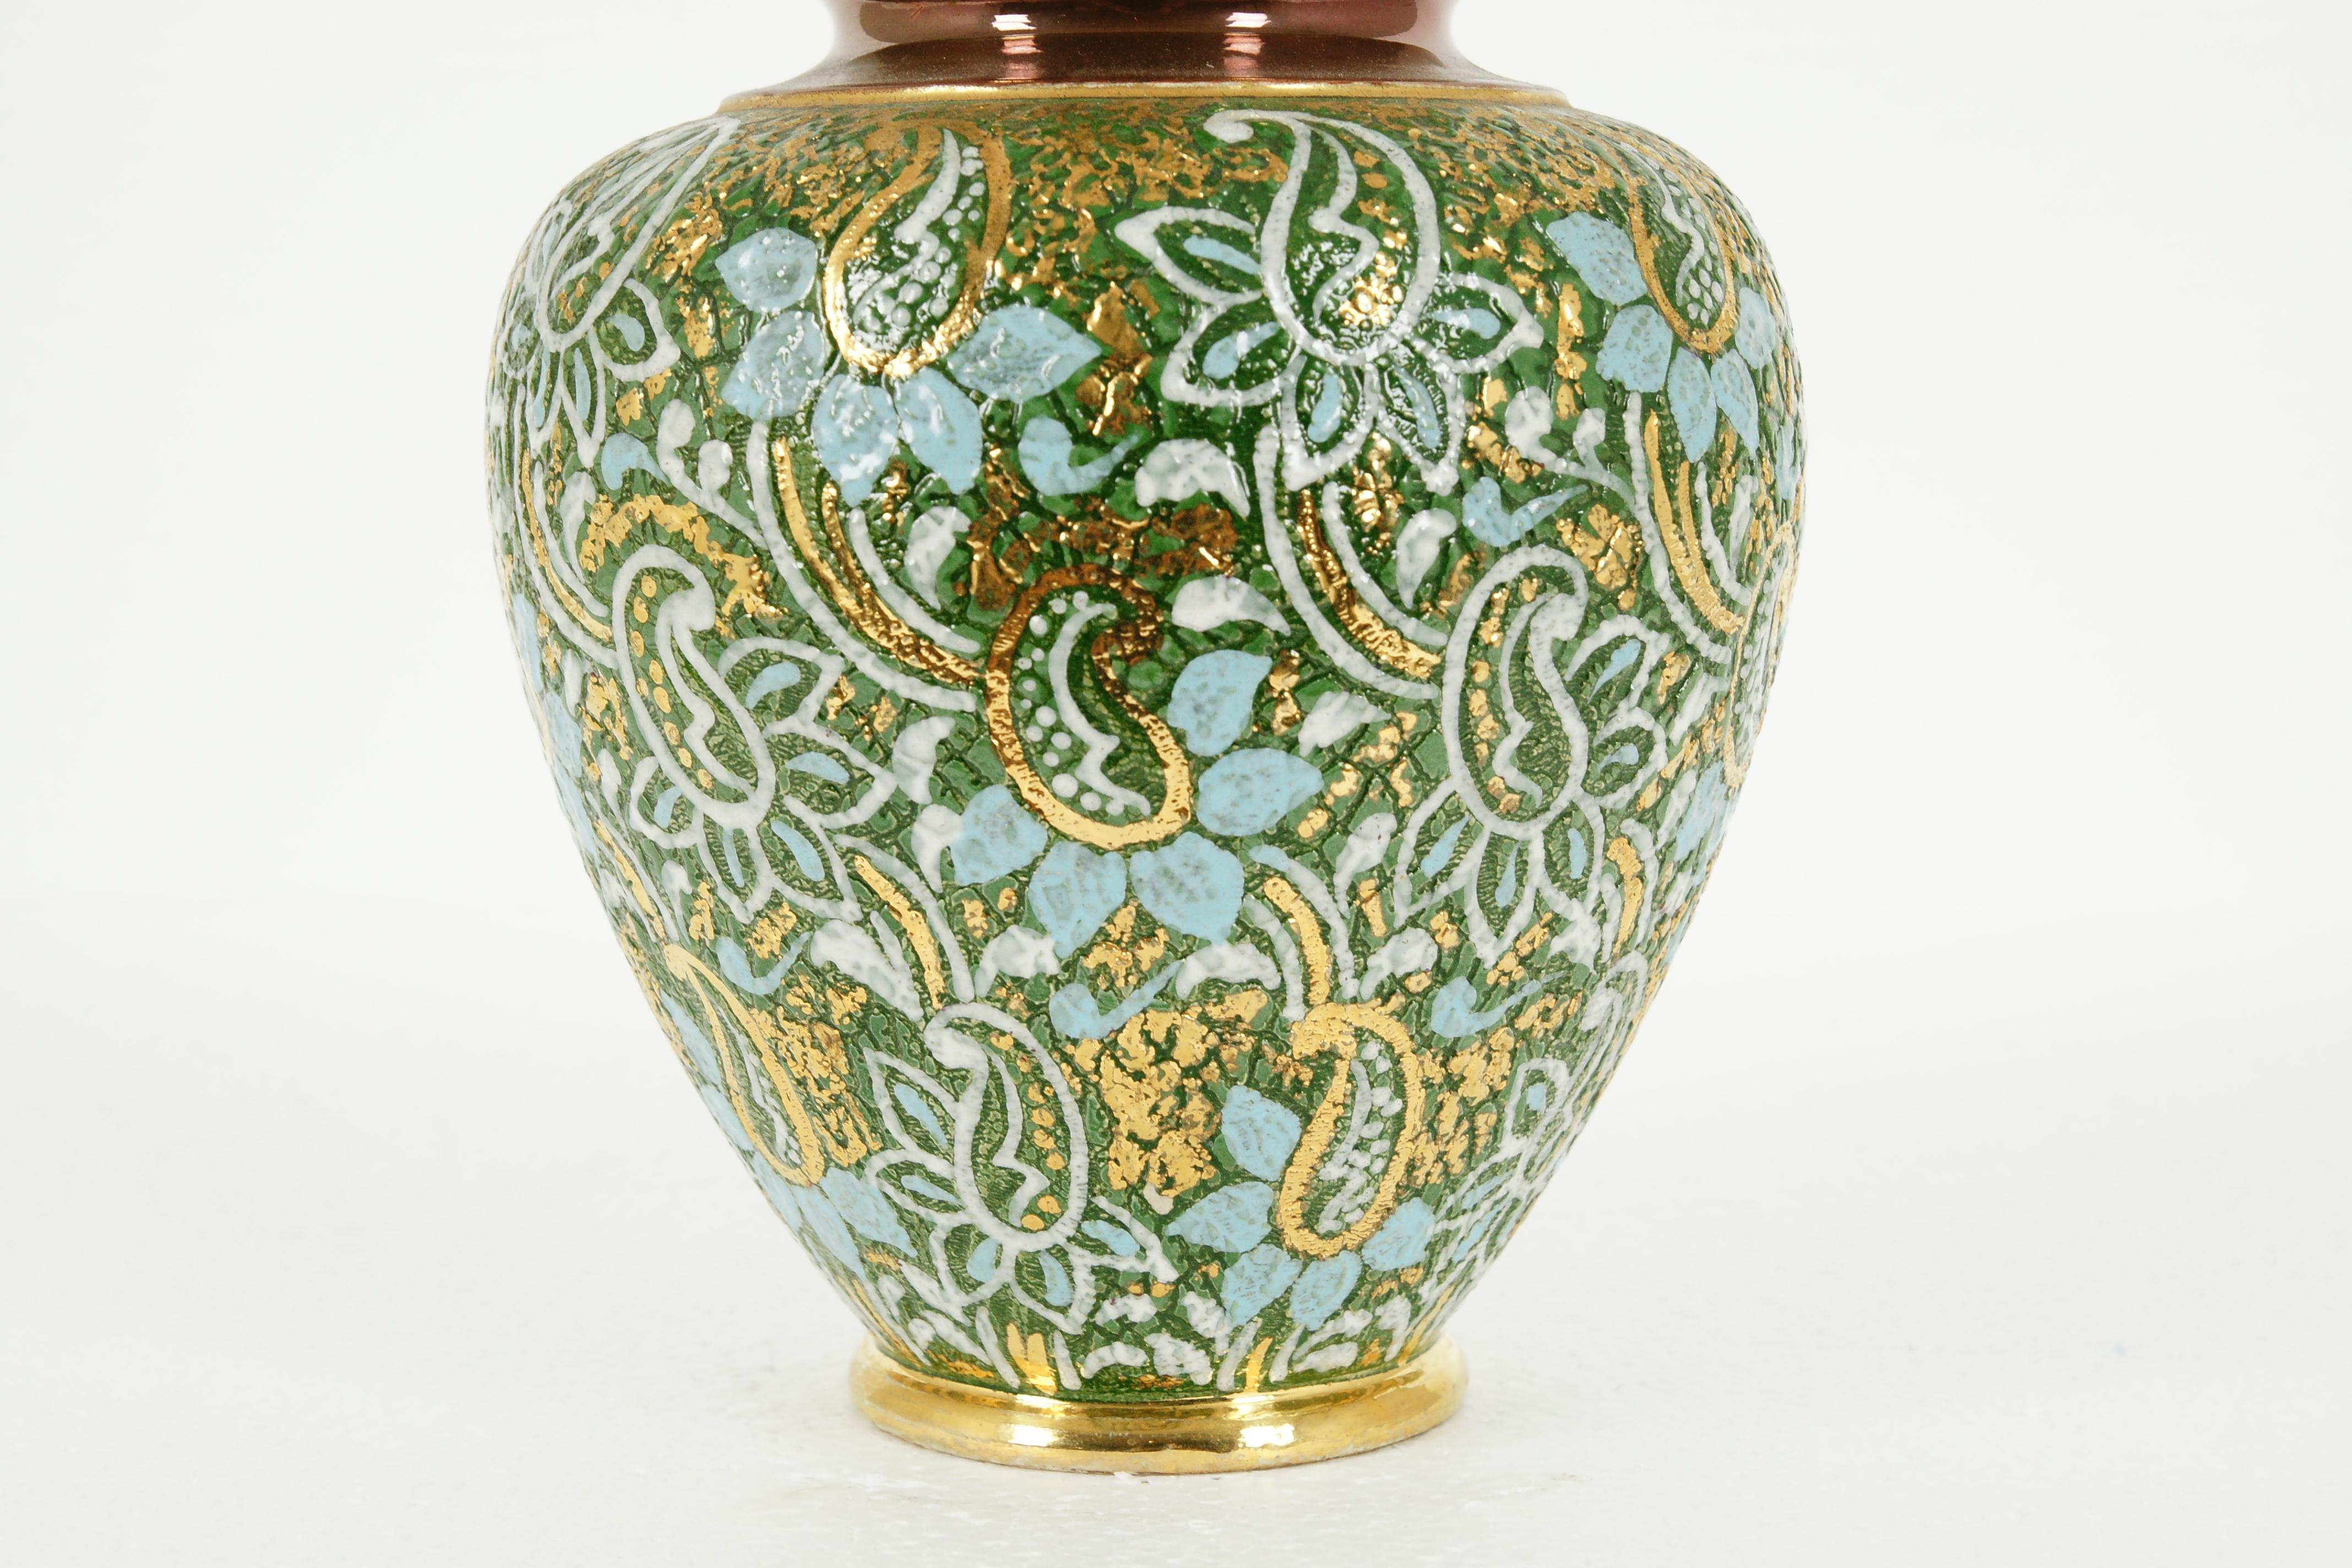 20th Century Royal Doulton Glazed Stoneware Slater Mantle Vase, England